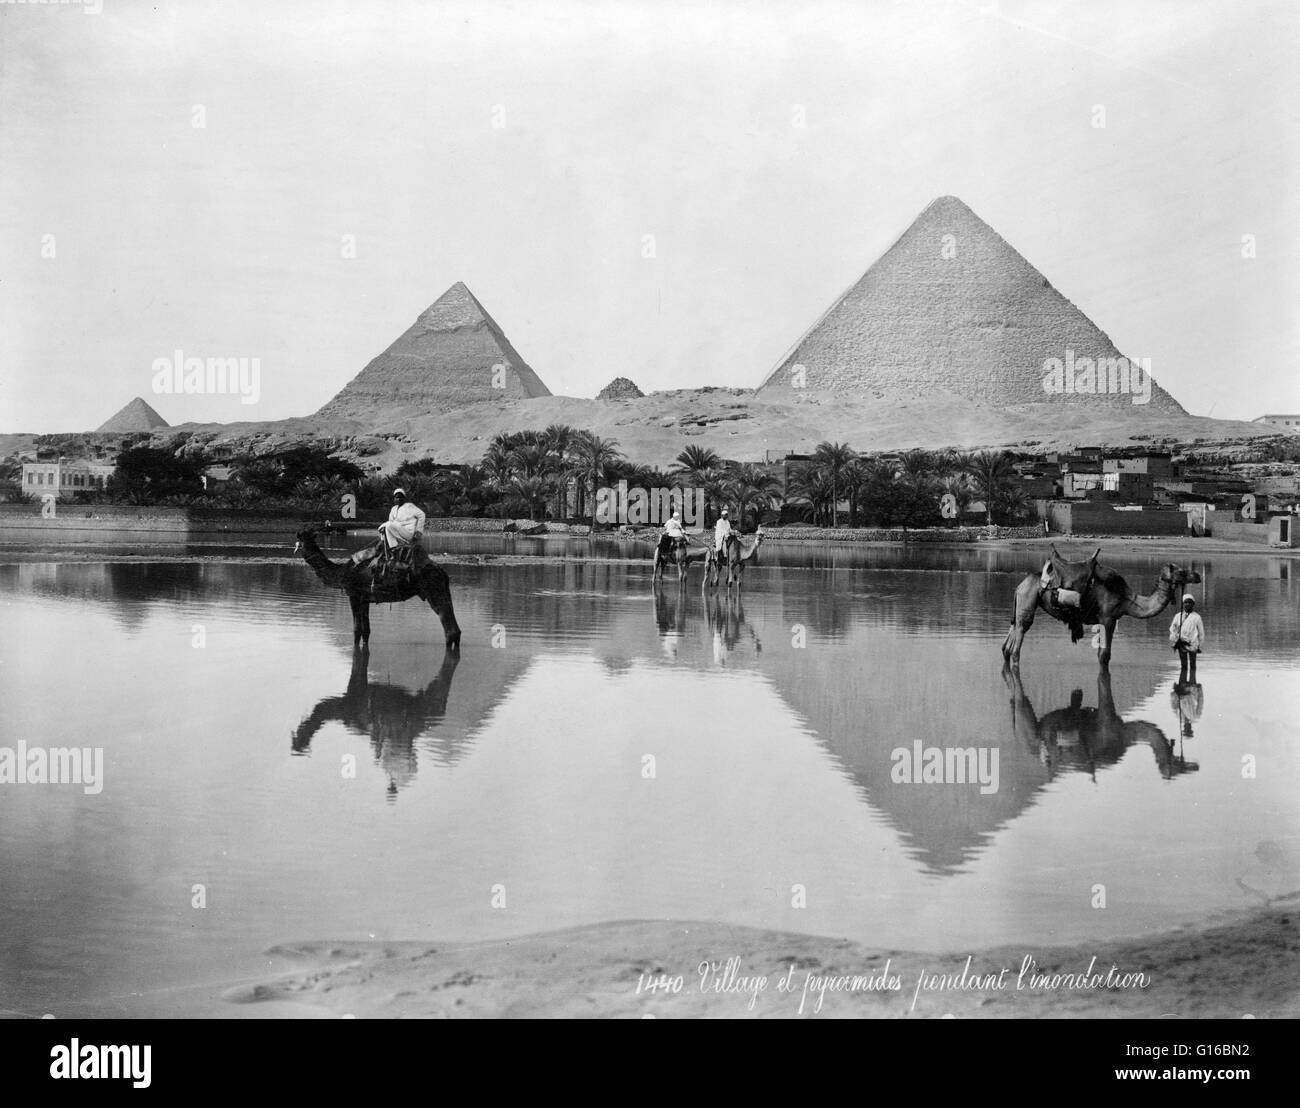 Titolo: "Village e piramidi durante l'alluvione-tempo, circa 189?'. mostra gli uomini sui cammelli e un uomo in piedi accanto a un cammello Nello shallow acqua di inondazione, con piramidi in background. La Necropoli di Giza (piramidi di Giza) è un sito archeologico sulla Gi Foto Stock